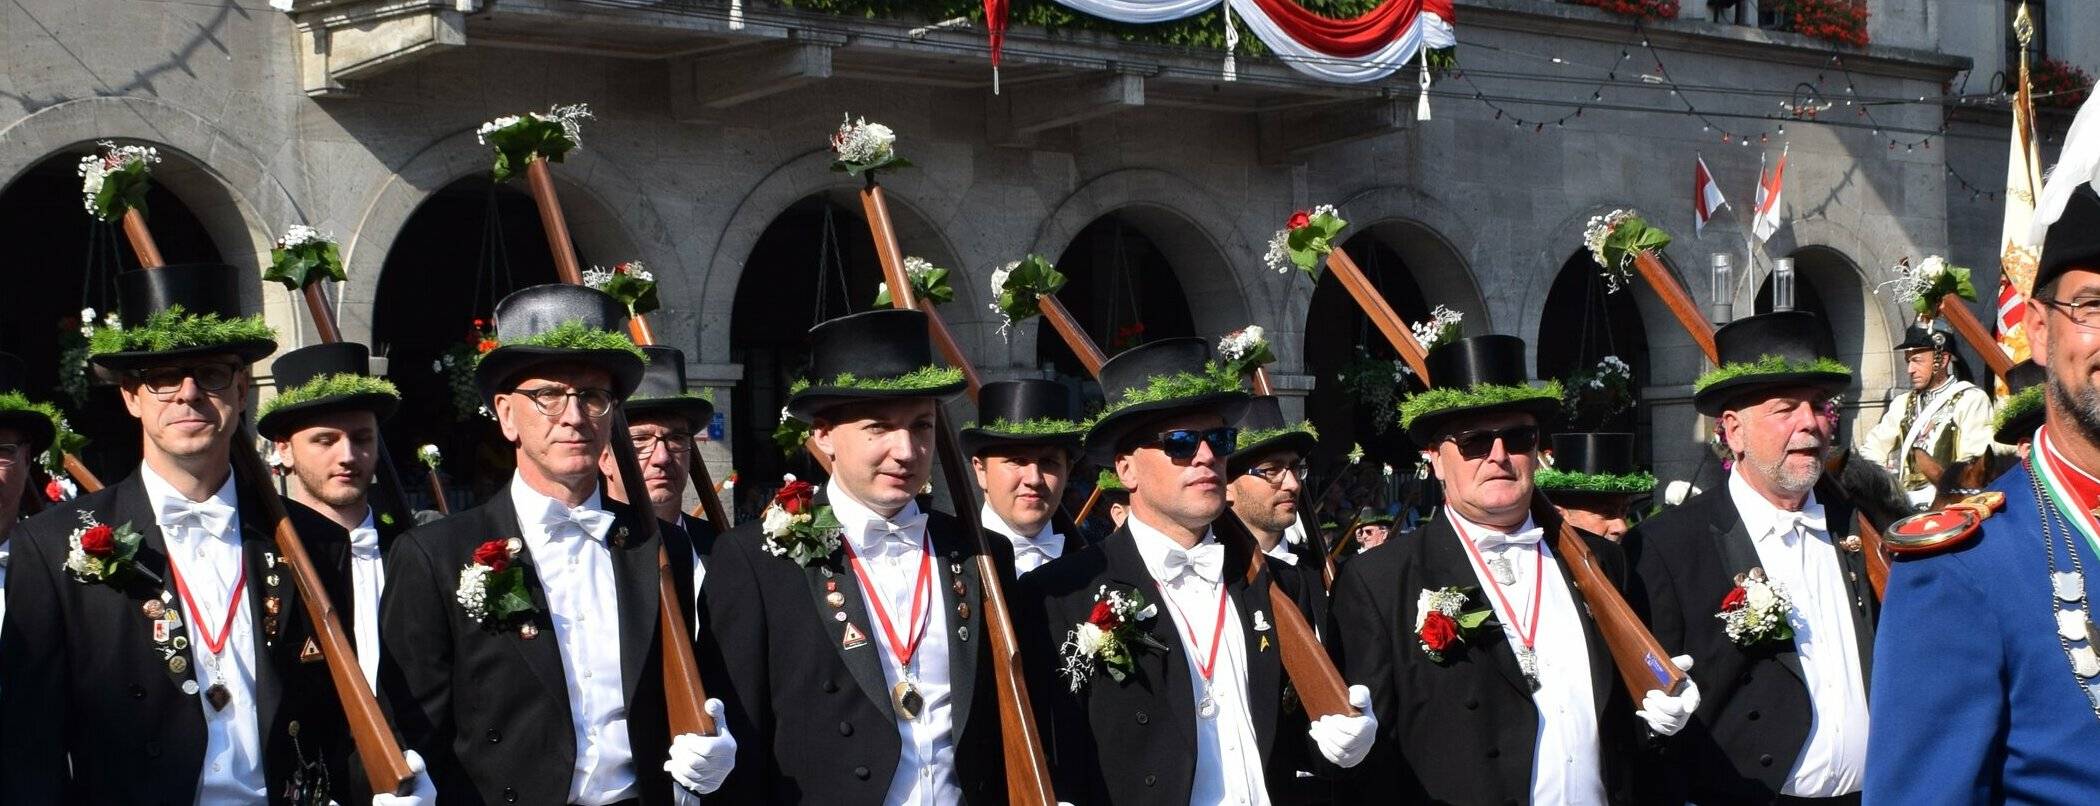  Endlich wieder Schützenfest feiern wie 2019 – die Schützen sind voller Vorfreude! 